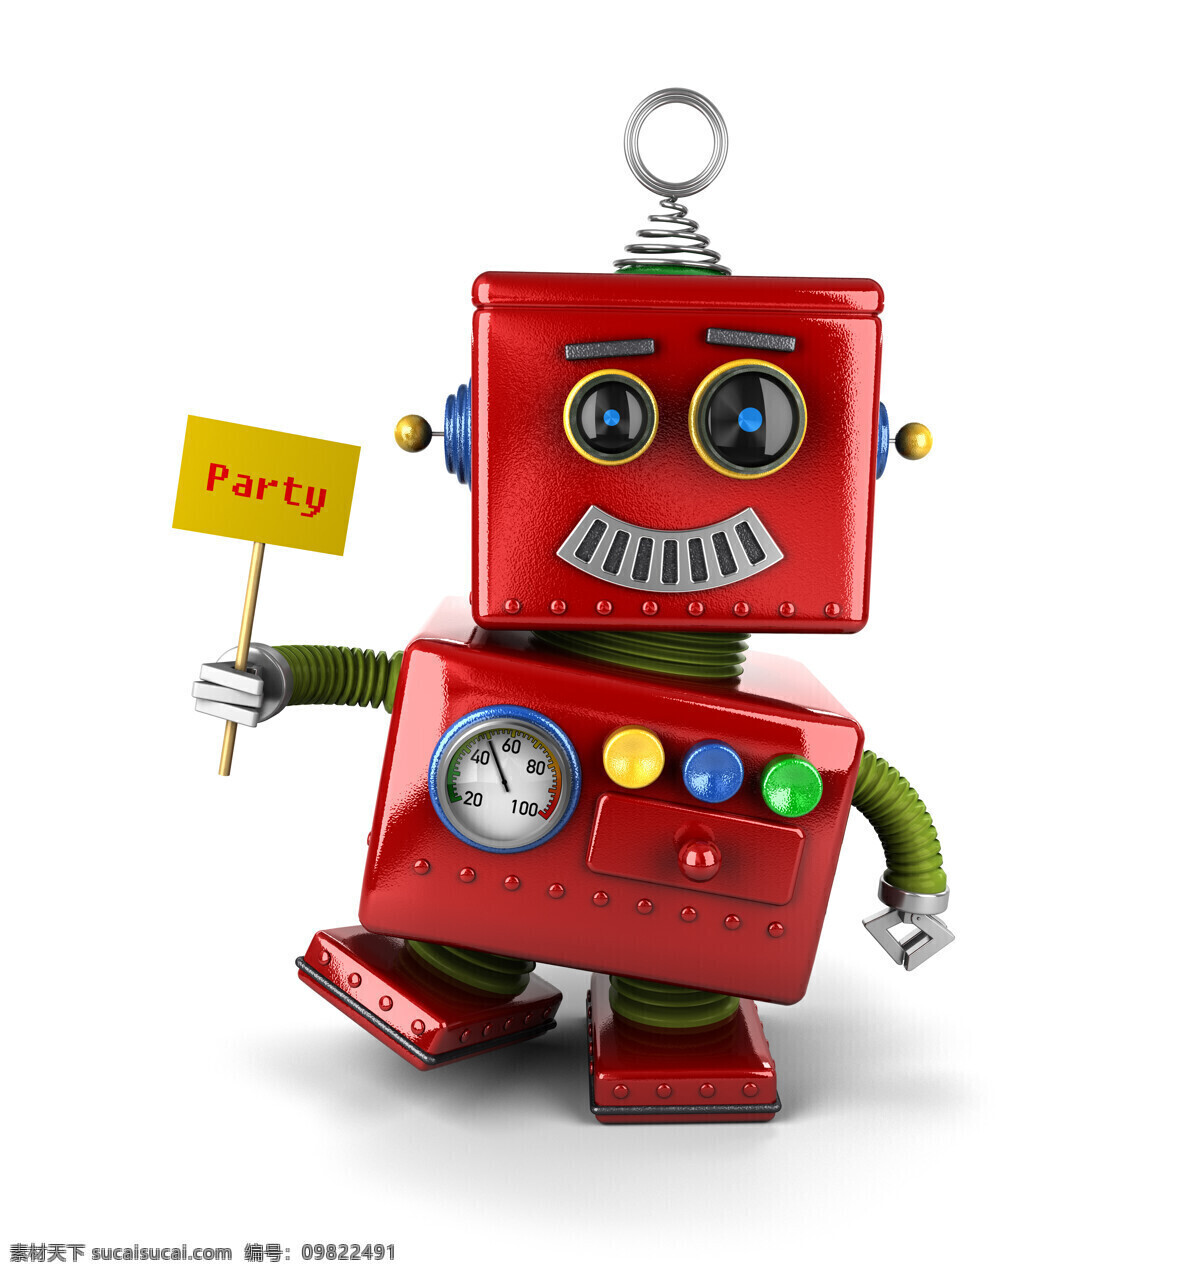 提示牌 机器人 红色 牌子 现代科技 其他类别 生活百科 白色